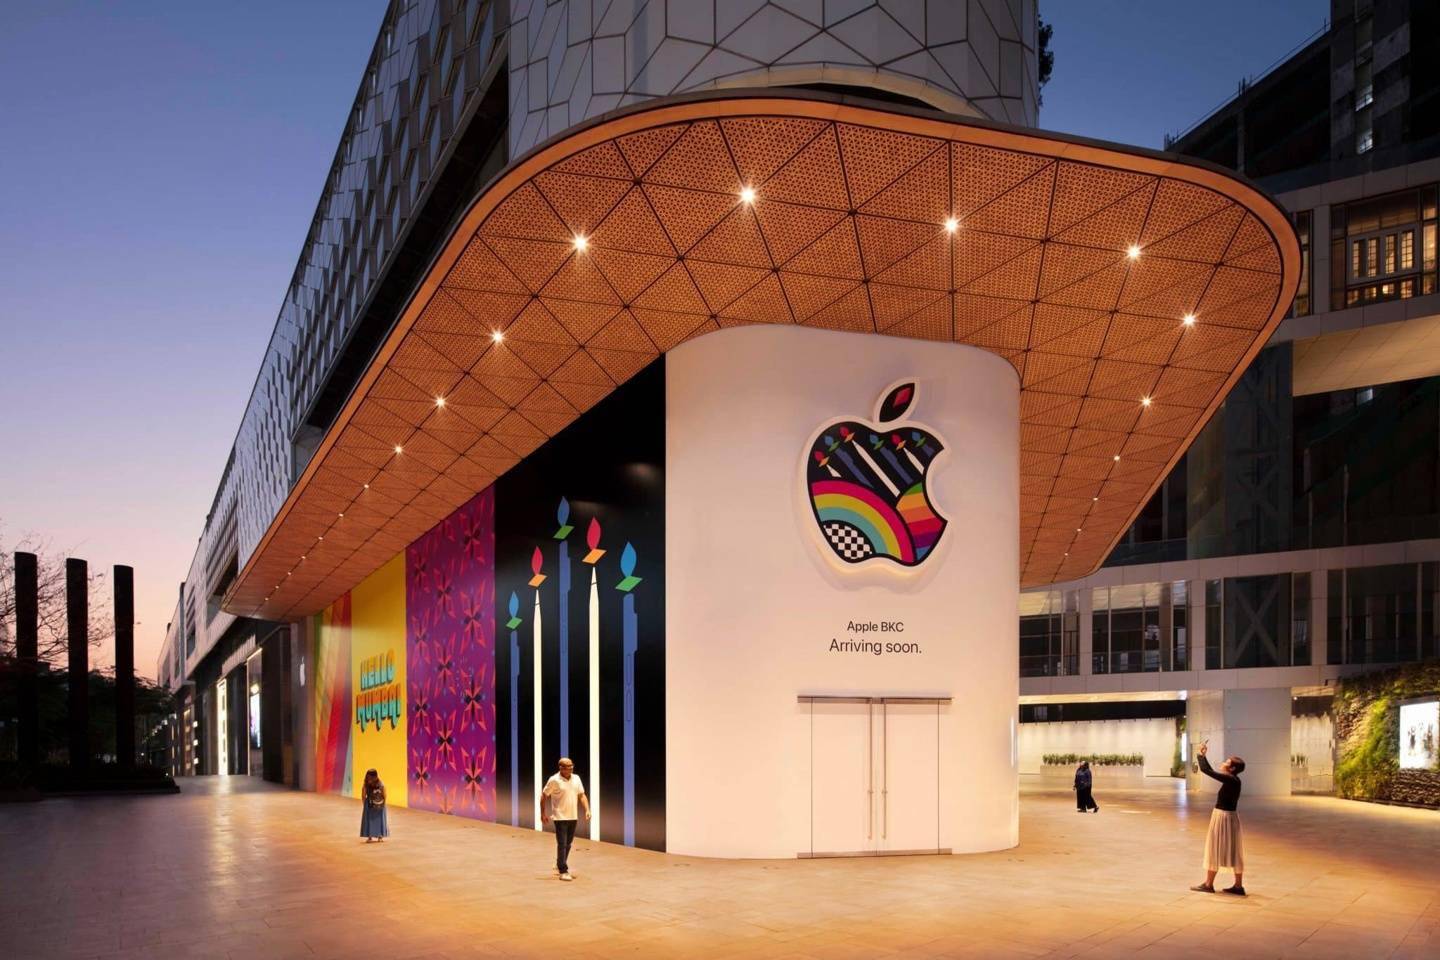 印度的首家 Apple Store 即将于本月晚些时候开业。媒体 The Economic Times 最新报道称，苹果入驻 Jio Drive Mall 的一个重要条件是，要求 22 个竞争品牌不得入驻。